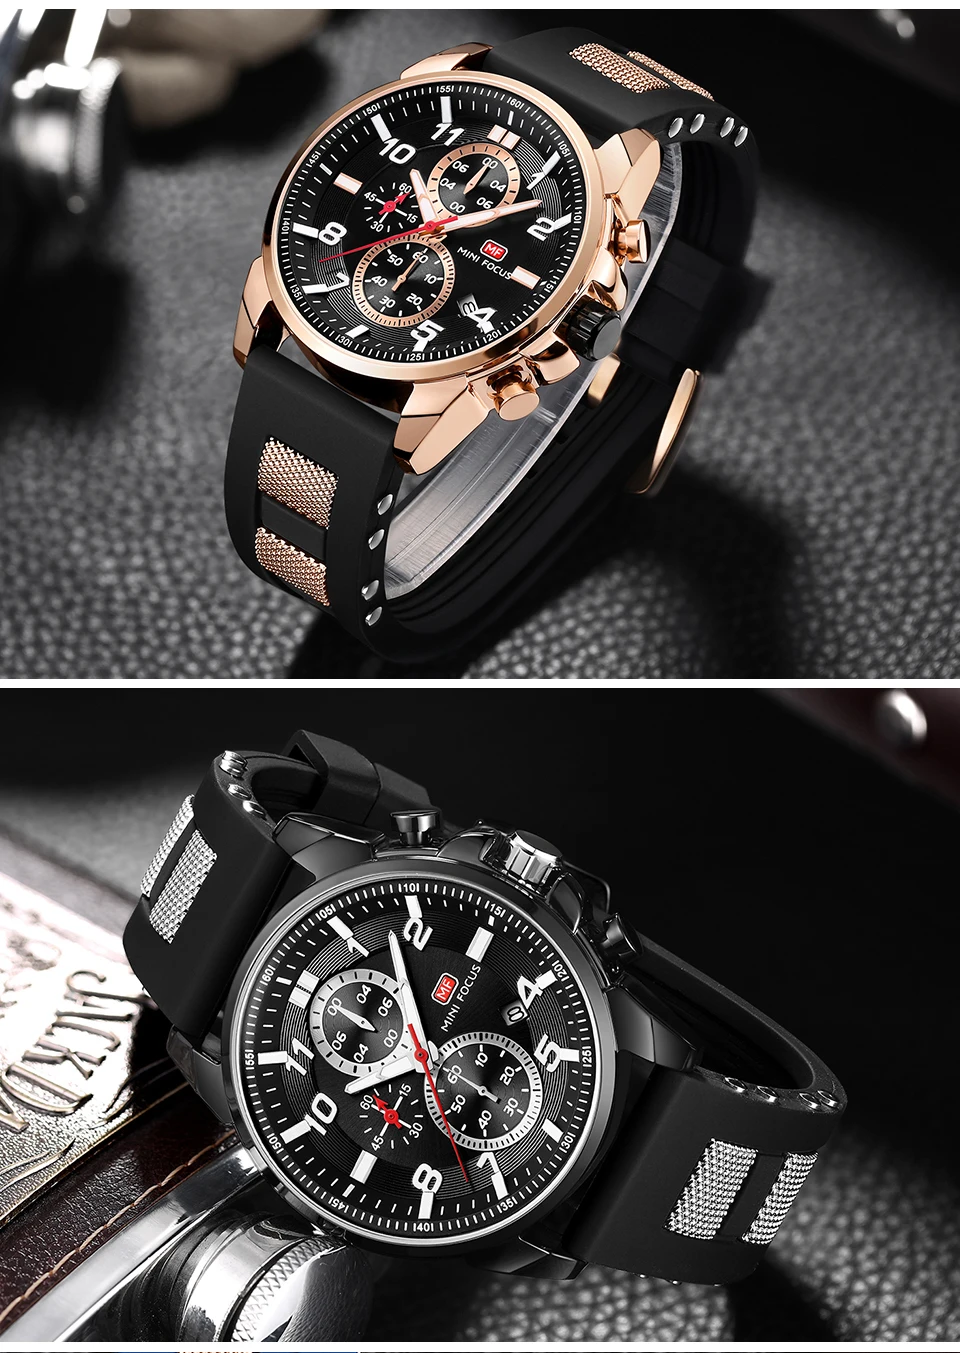 Мужские s часы лучший бренд класса люкс часы WACH мужские часы кожаные роскошные водонепроницаемые спортивные мужские часы Мужские наручные часы